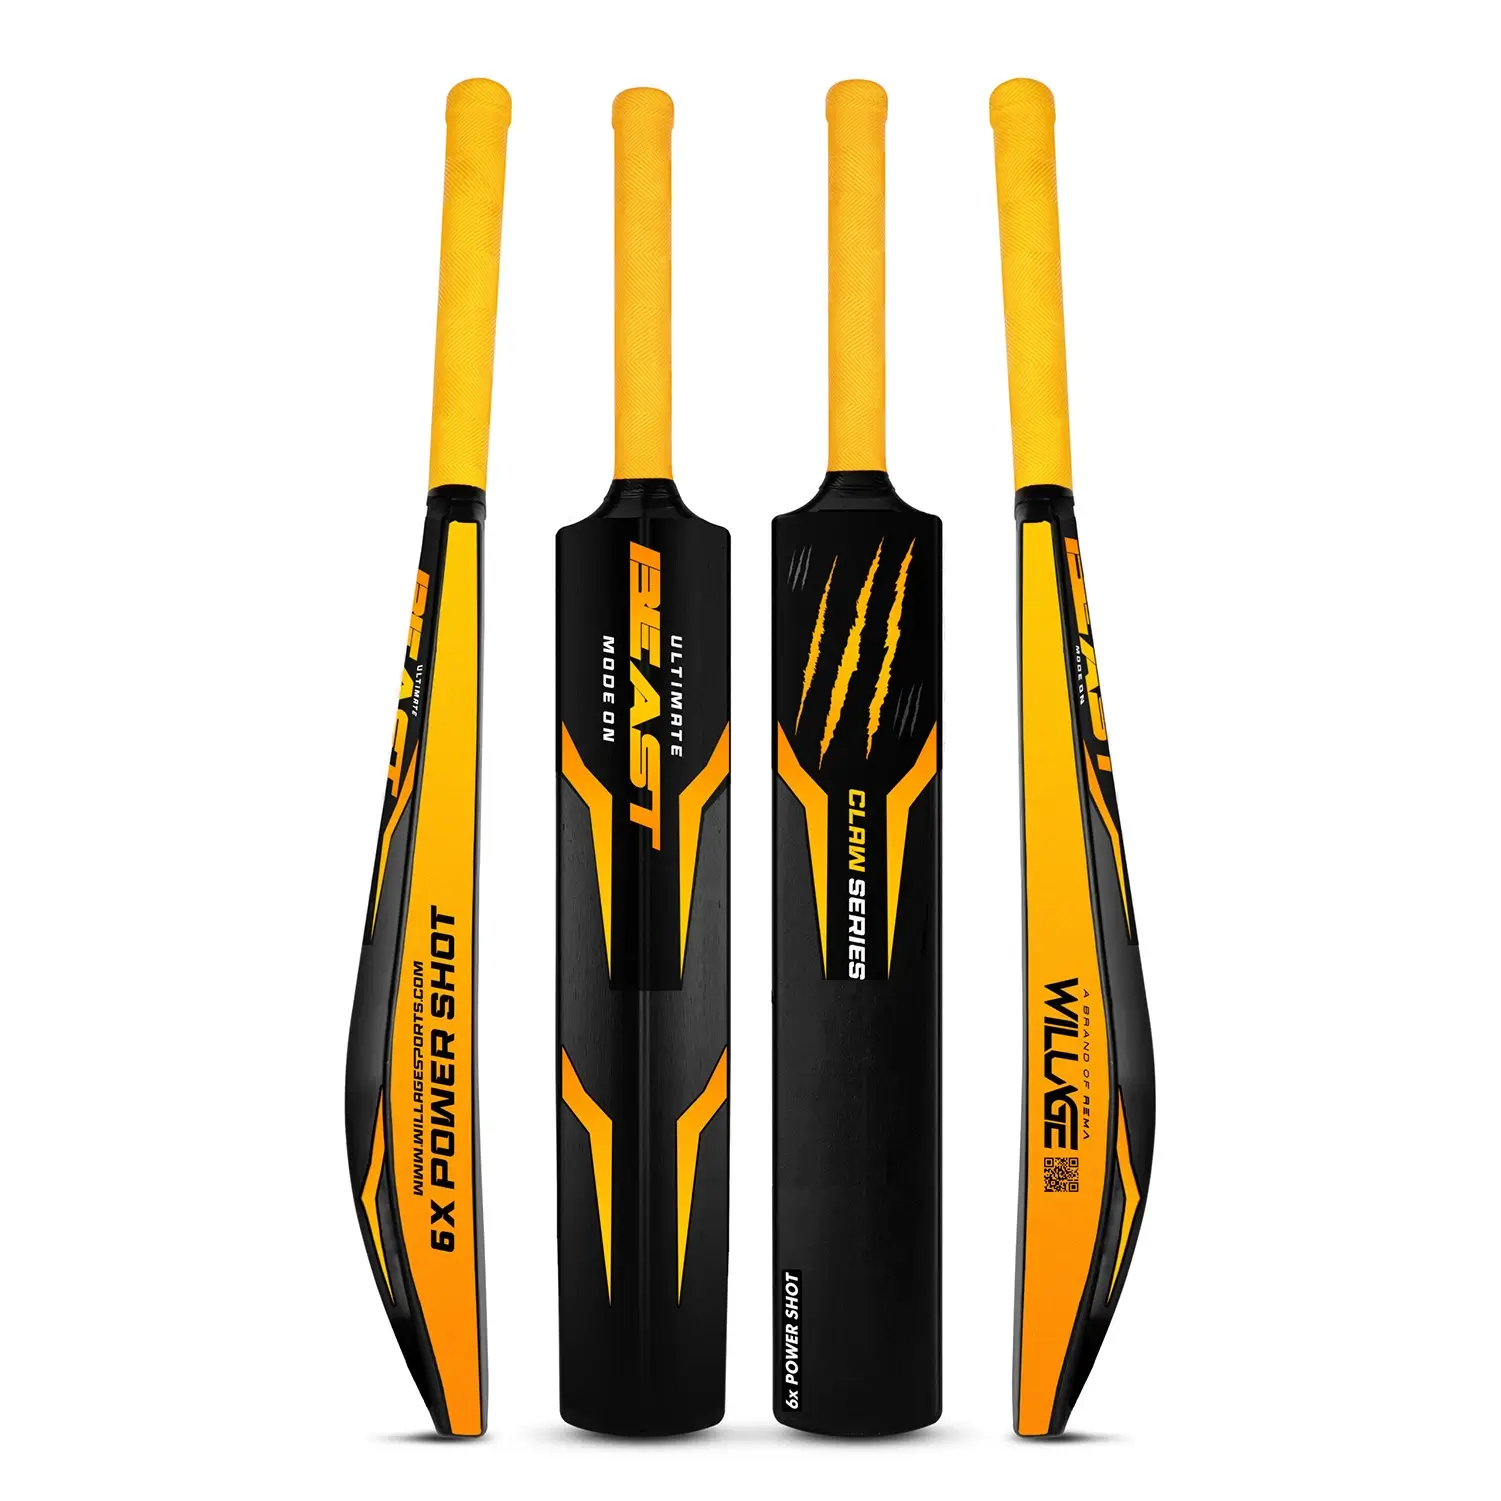 DISNEY Standard Handle PLASTIC BAT NO - 4, For Cricket at Rs 225